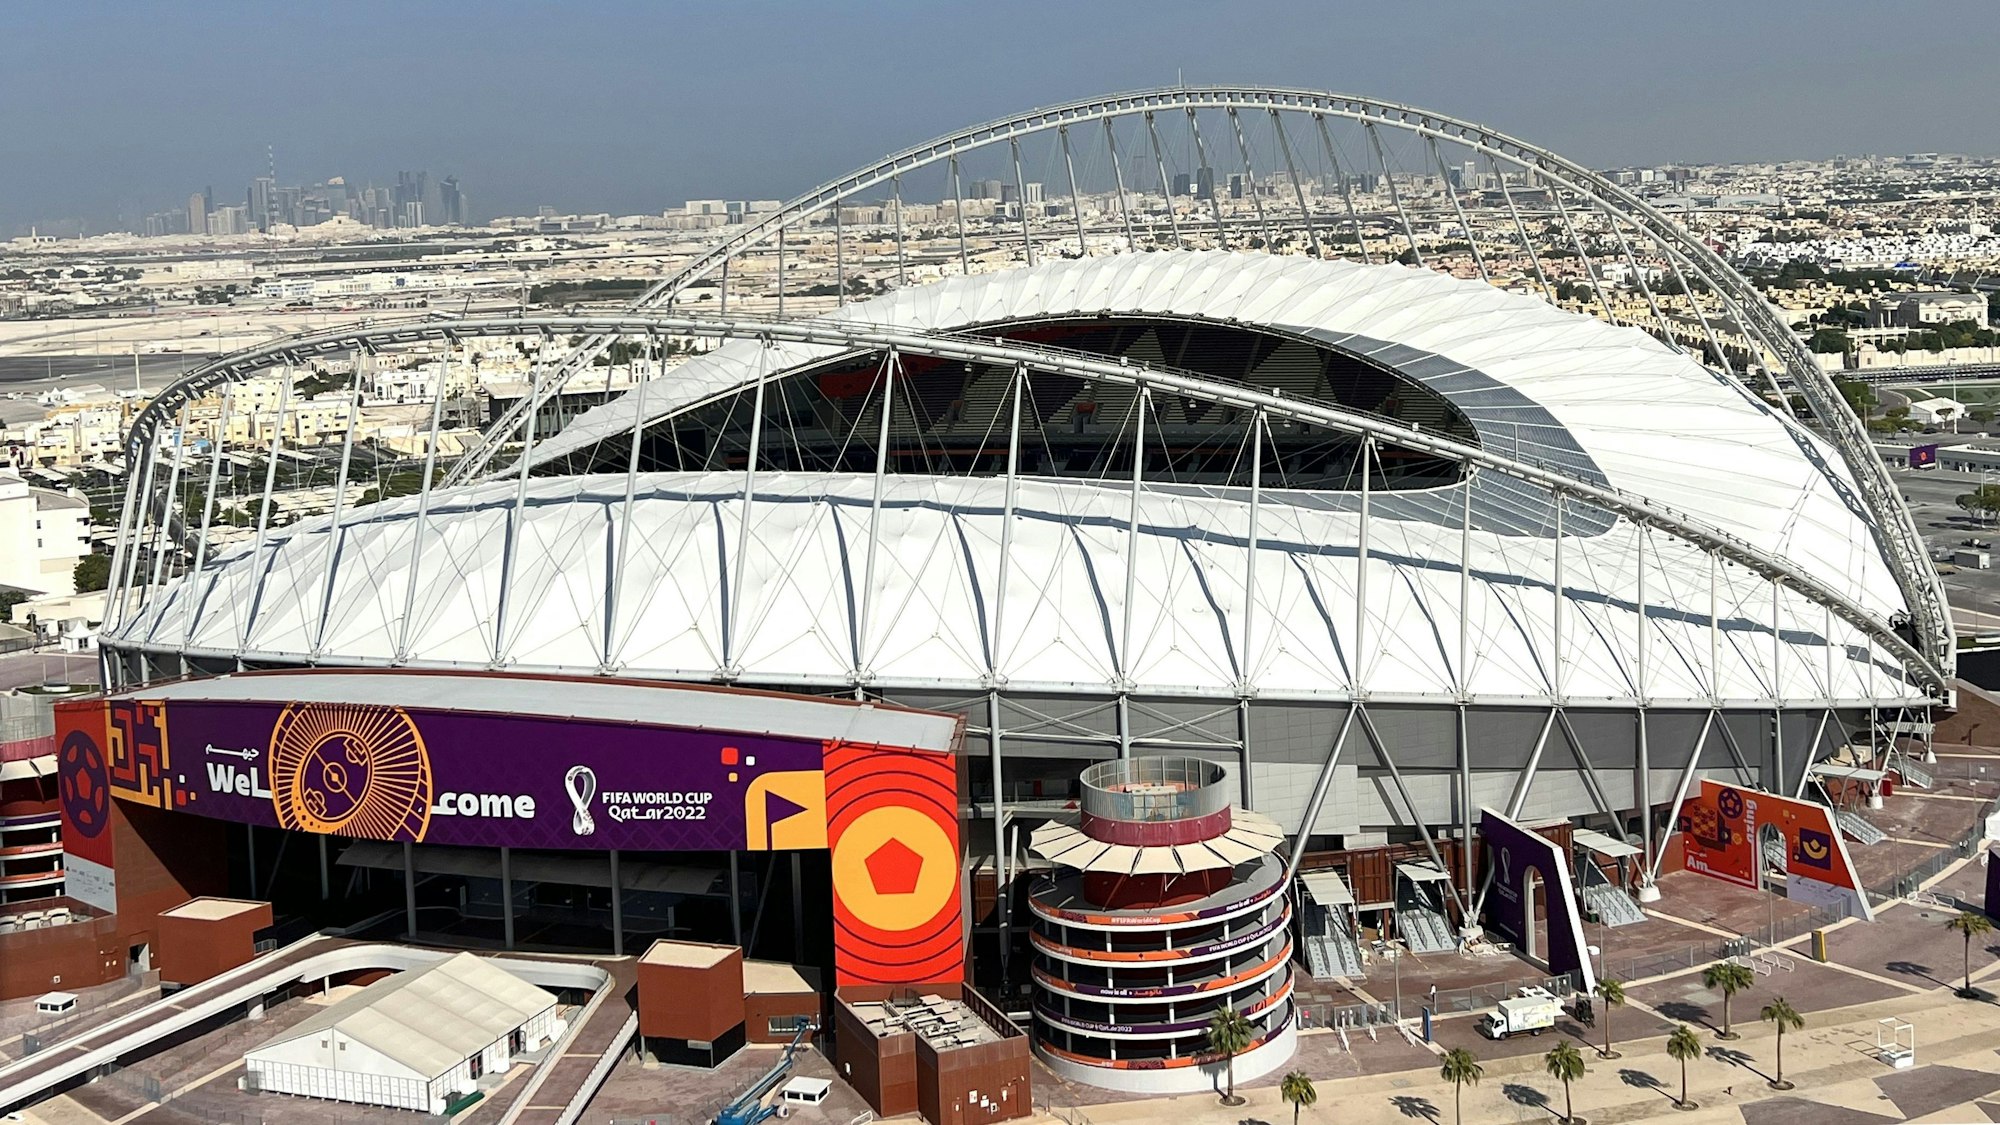 Das Khalifa Stadion in Doha ist ein ovales Gebäude mit in der Mitte offenem Dach und aufwändiger Hängedachkonstruktion an den Seiten. Im Bildhintergrund schließt sich städtische Bebauung ans Stadion an.